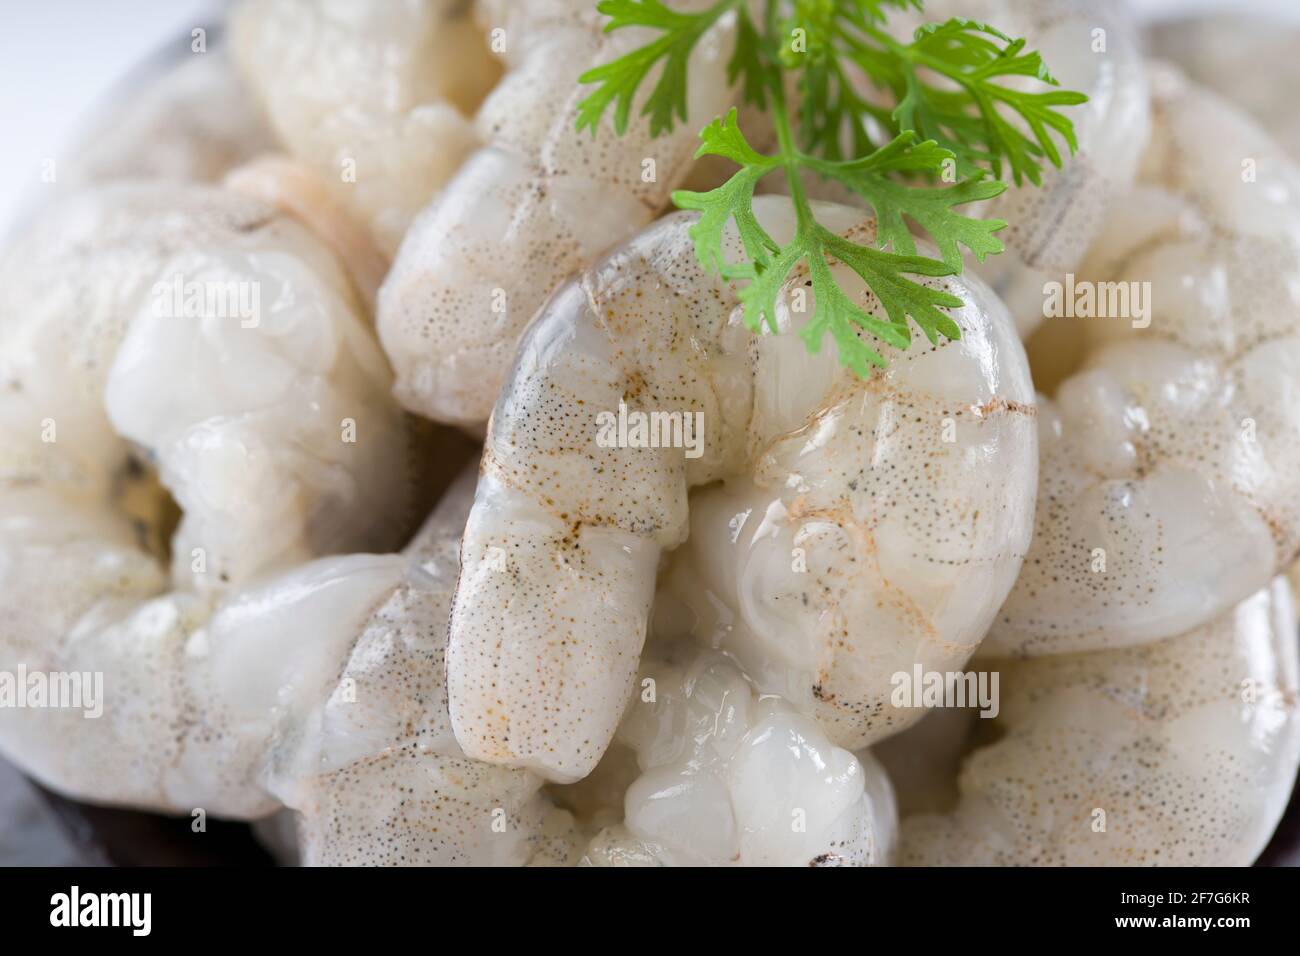 Crevettes pelées crues ou crevettes disposées en céramique noire petit pot et garni de feuilles de coriandre qui est prête pour cuisiner, placé sur une texture blanche Banque D'Images